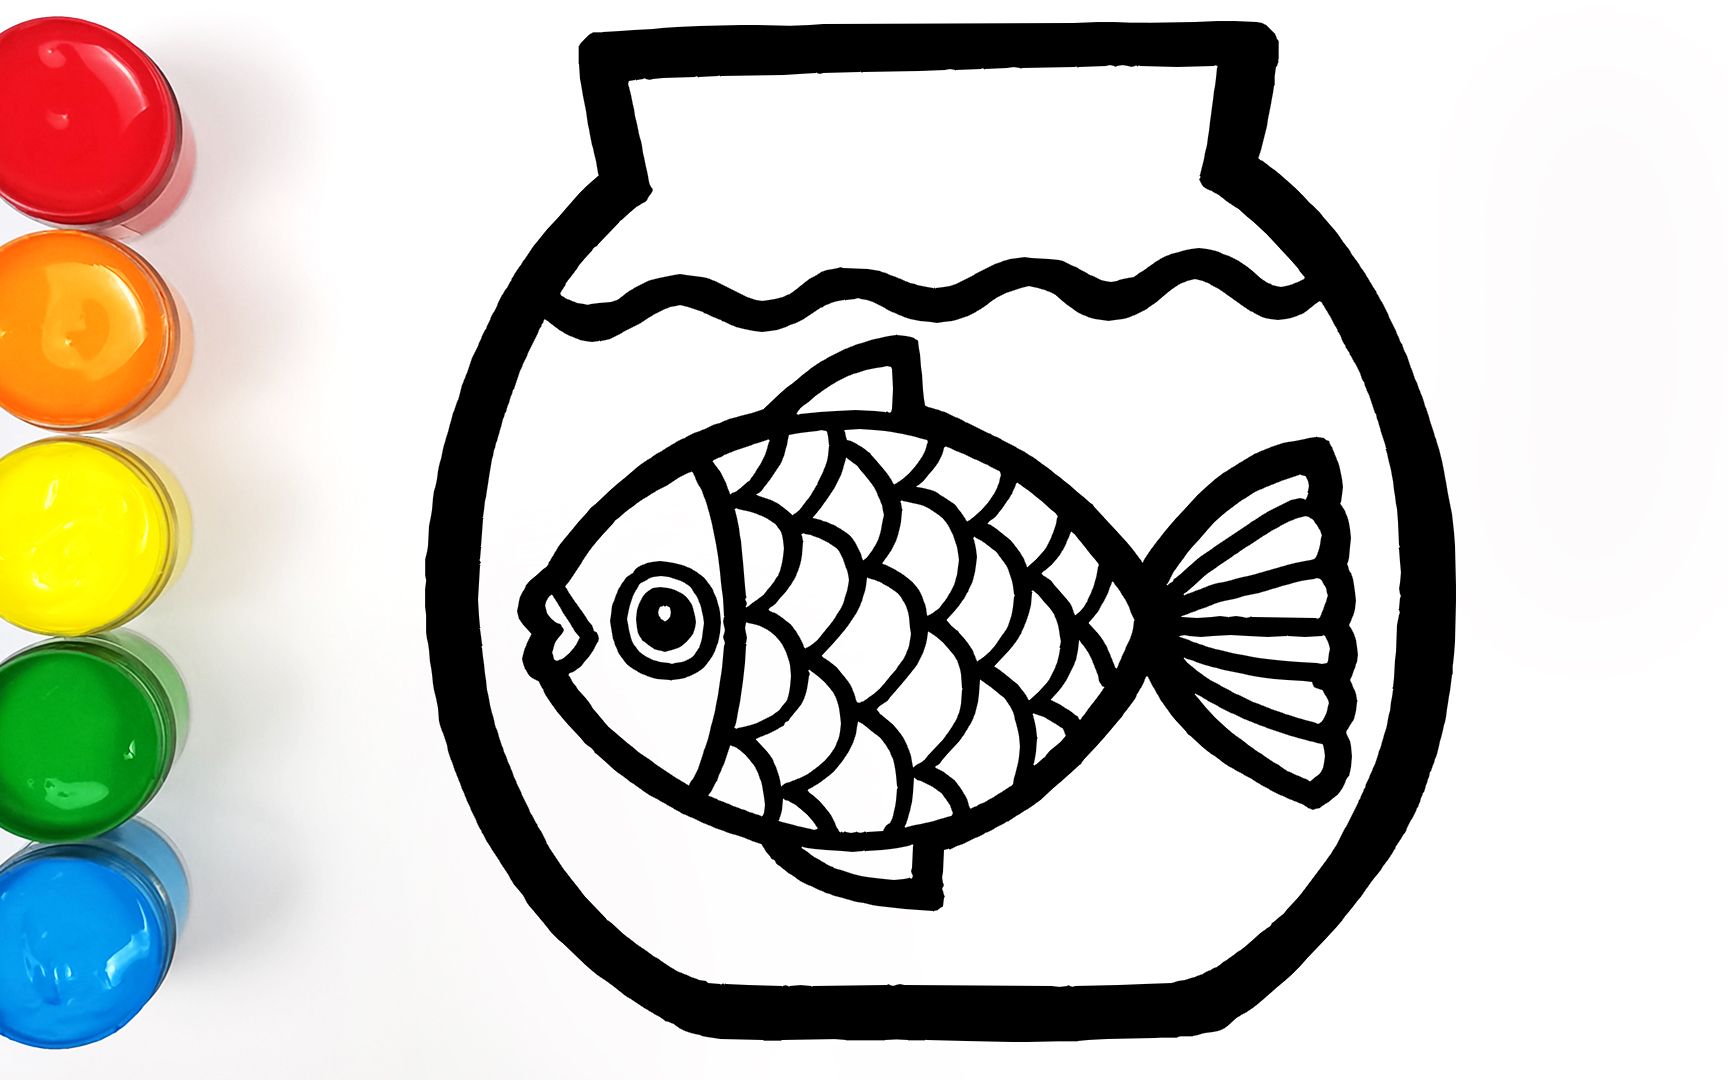 简笔画鱼缸里的鱼图片